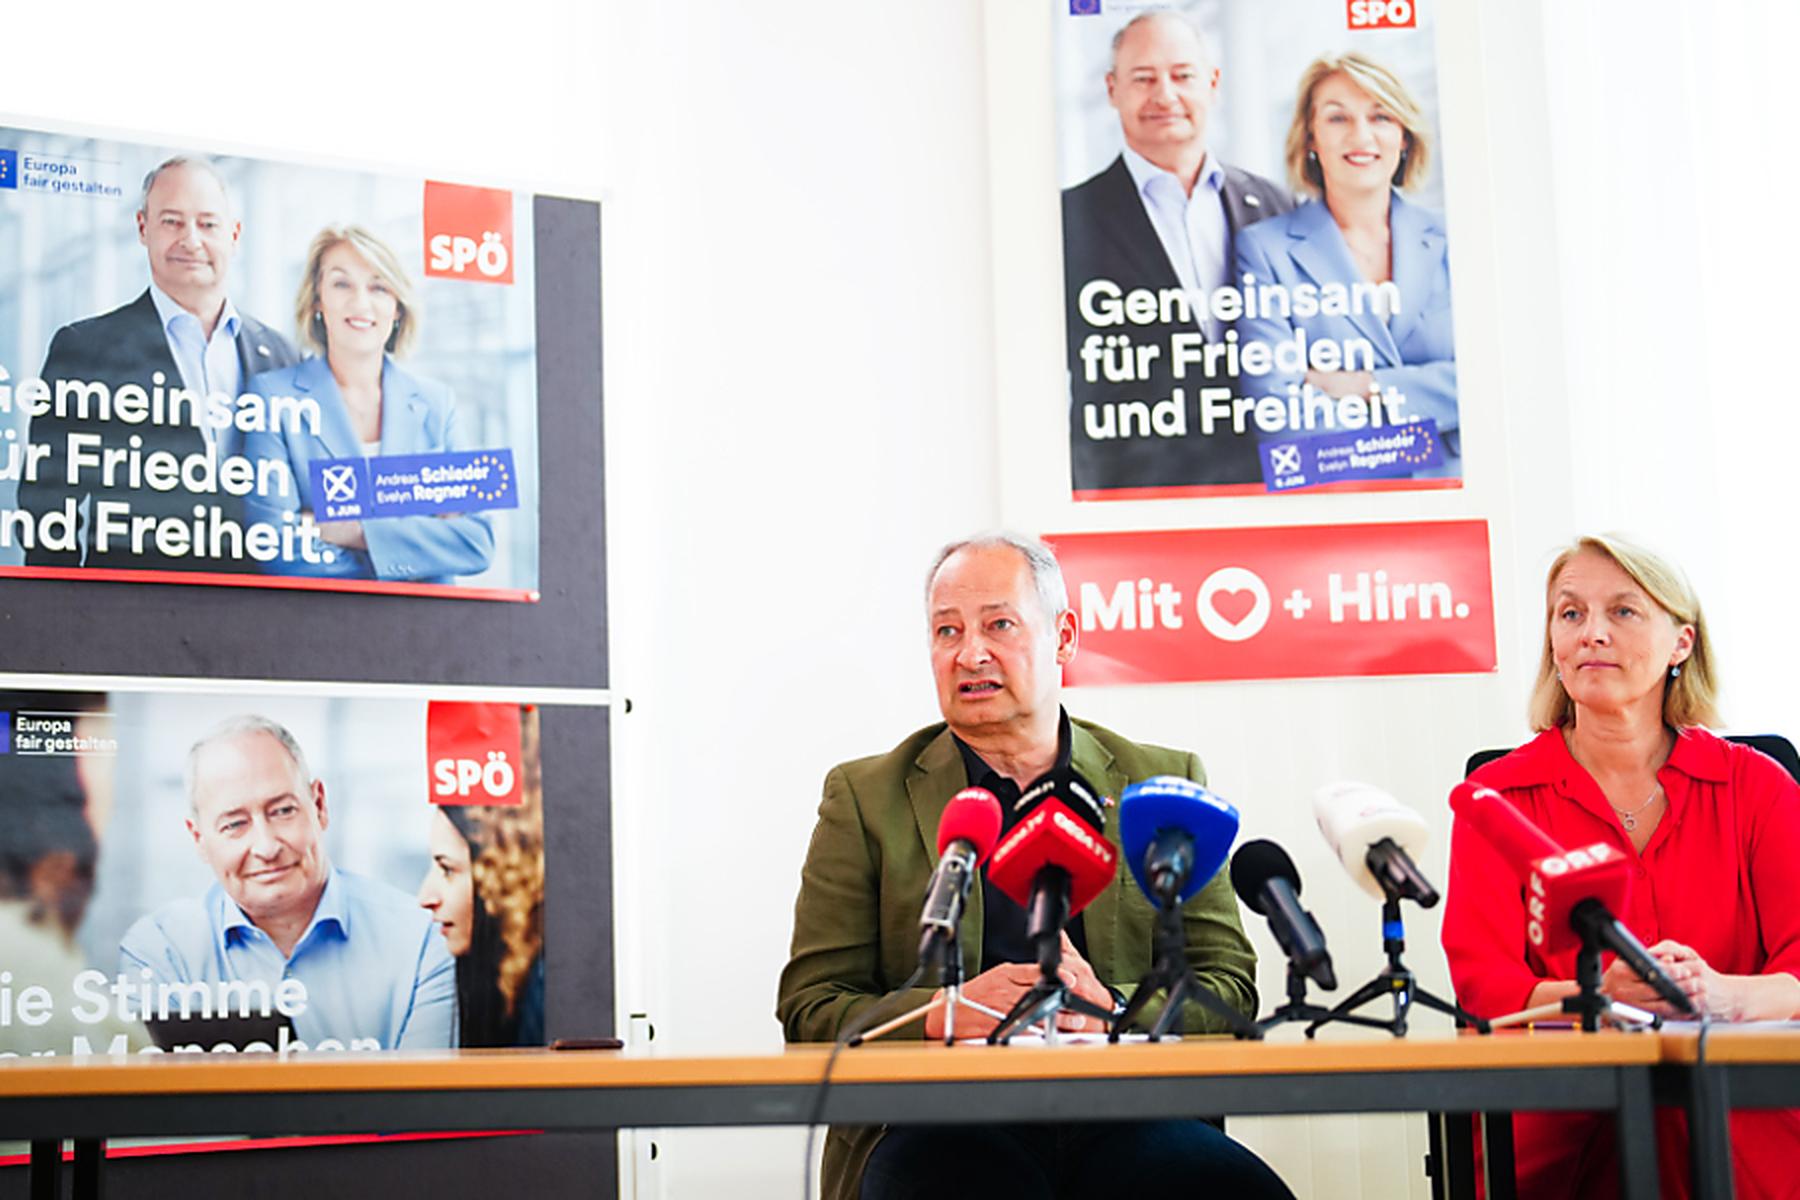 Wien: EU-Wahl - SPÖ will Arbeitsplätze wieder nach Europa holen